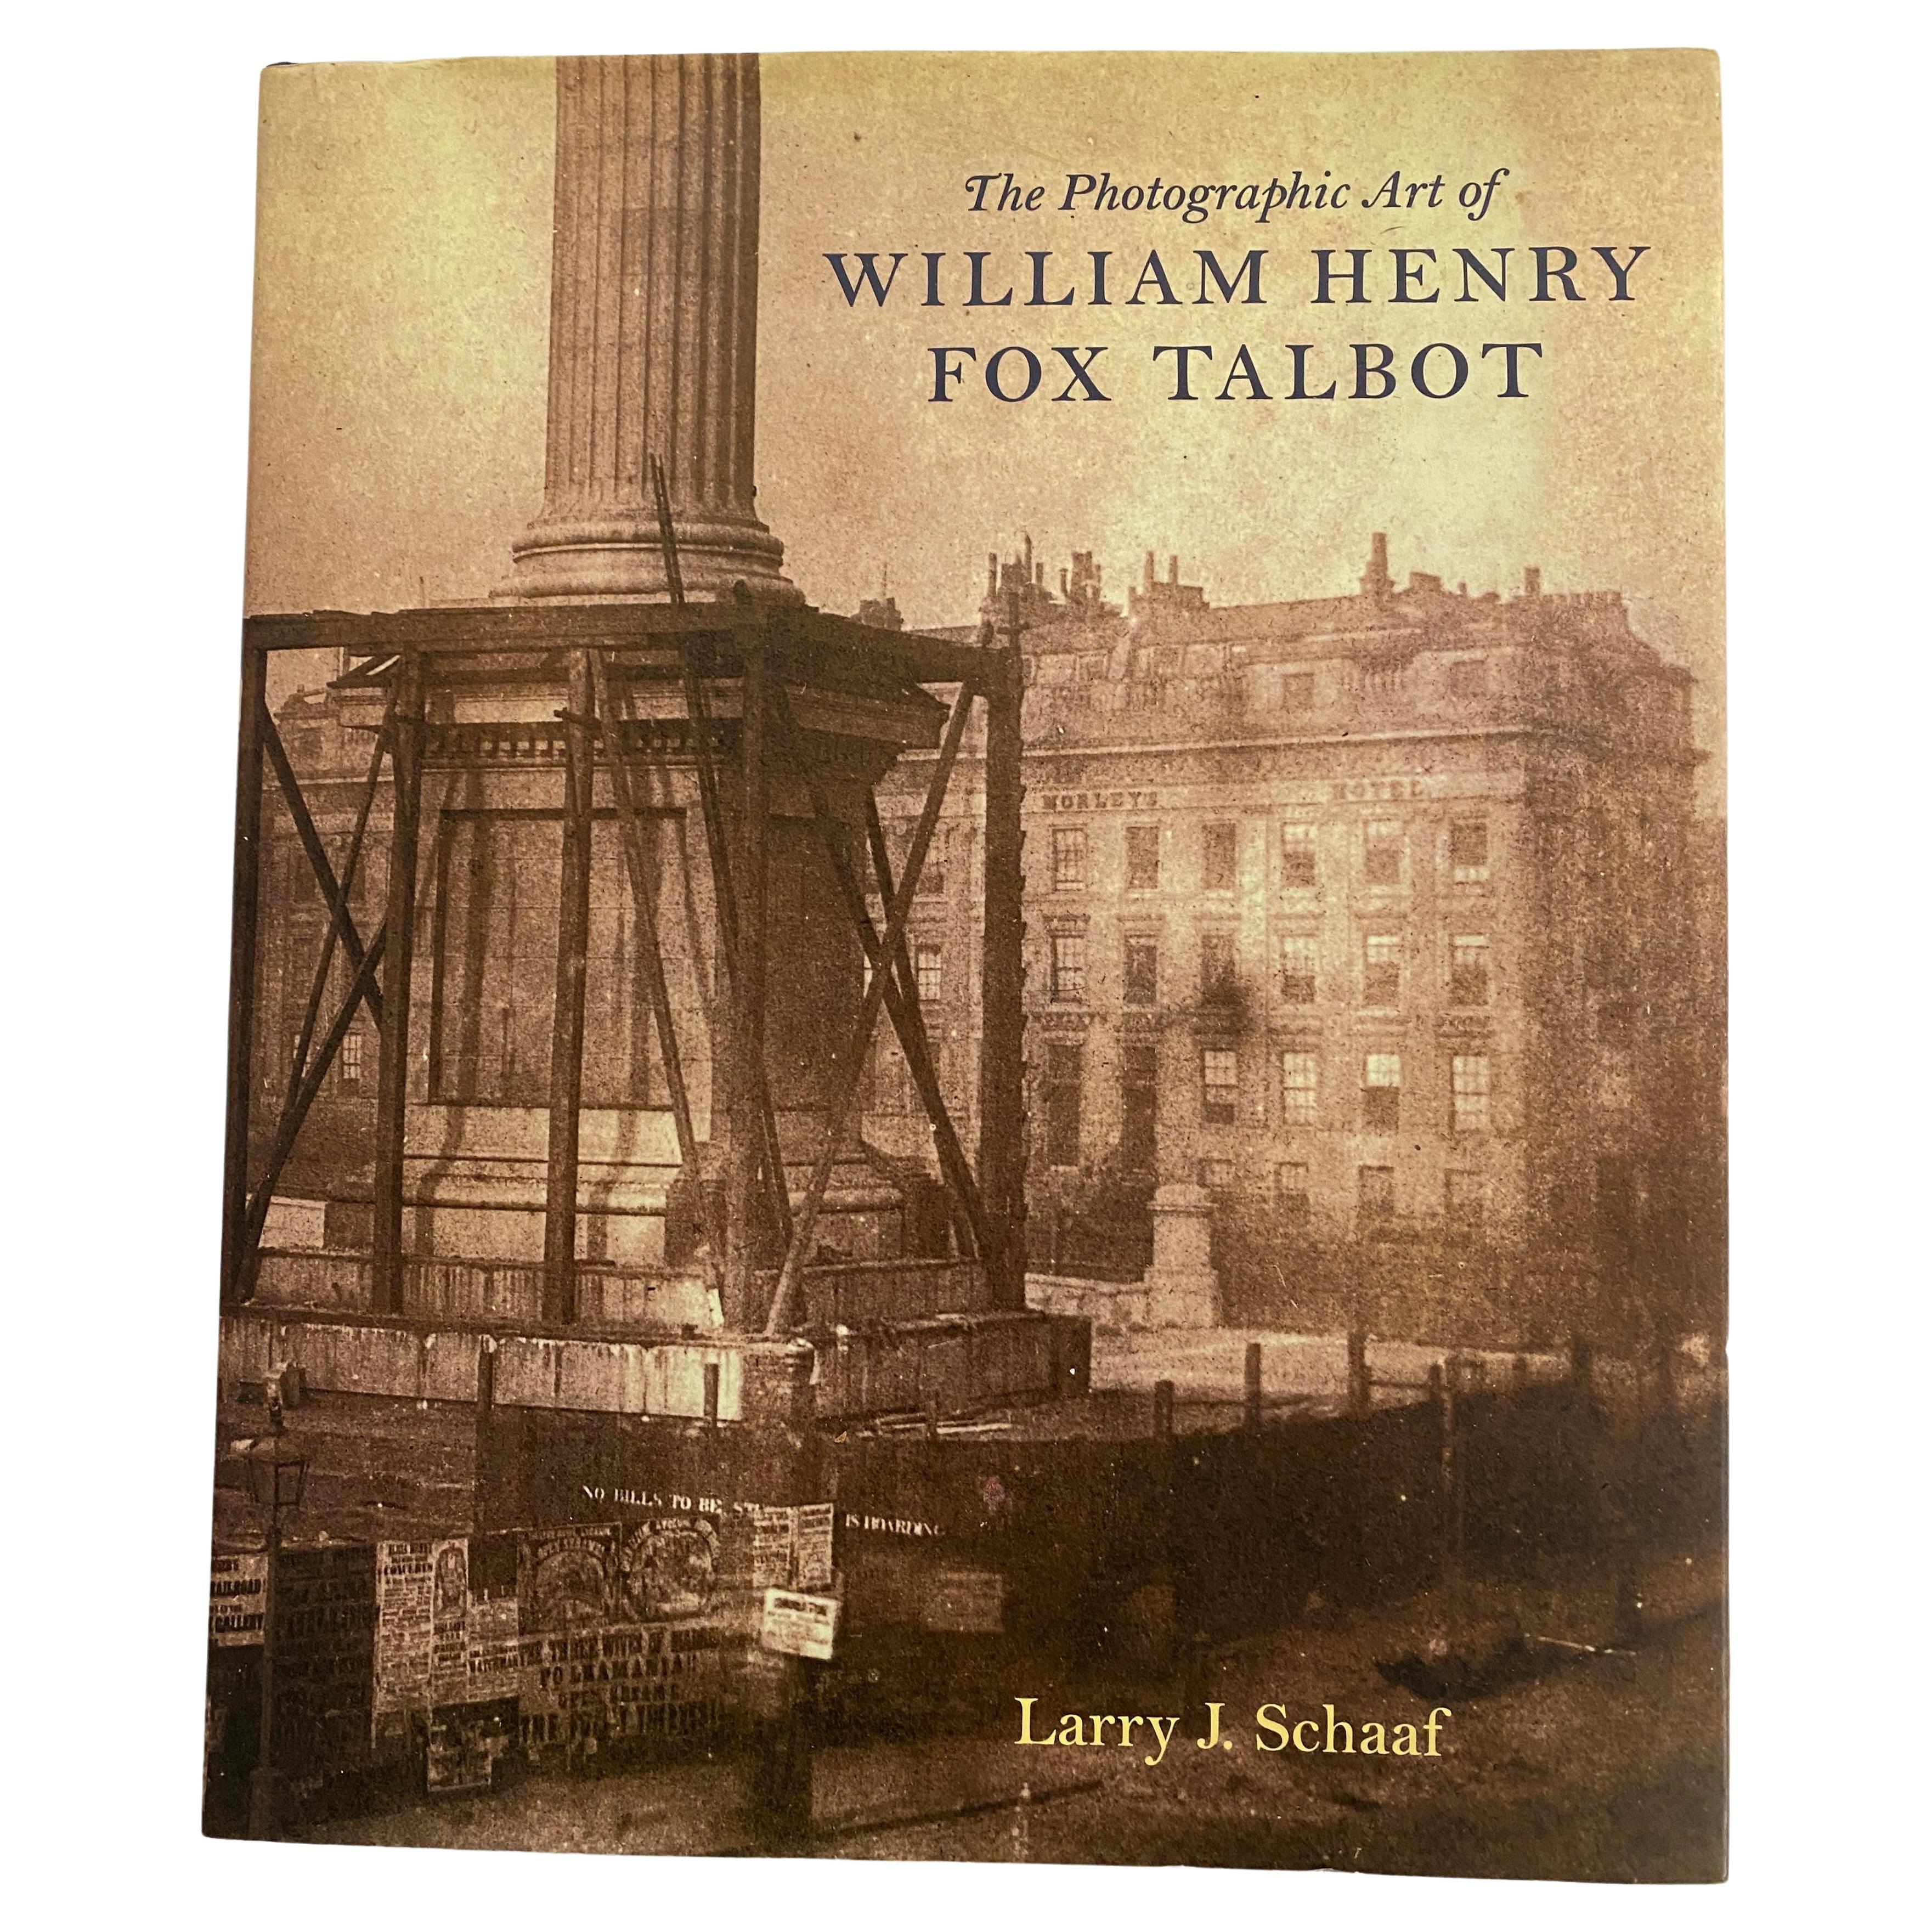 The Photographic Art of William Henry Fox Talbot von Larry J. Schaaf (Buch)